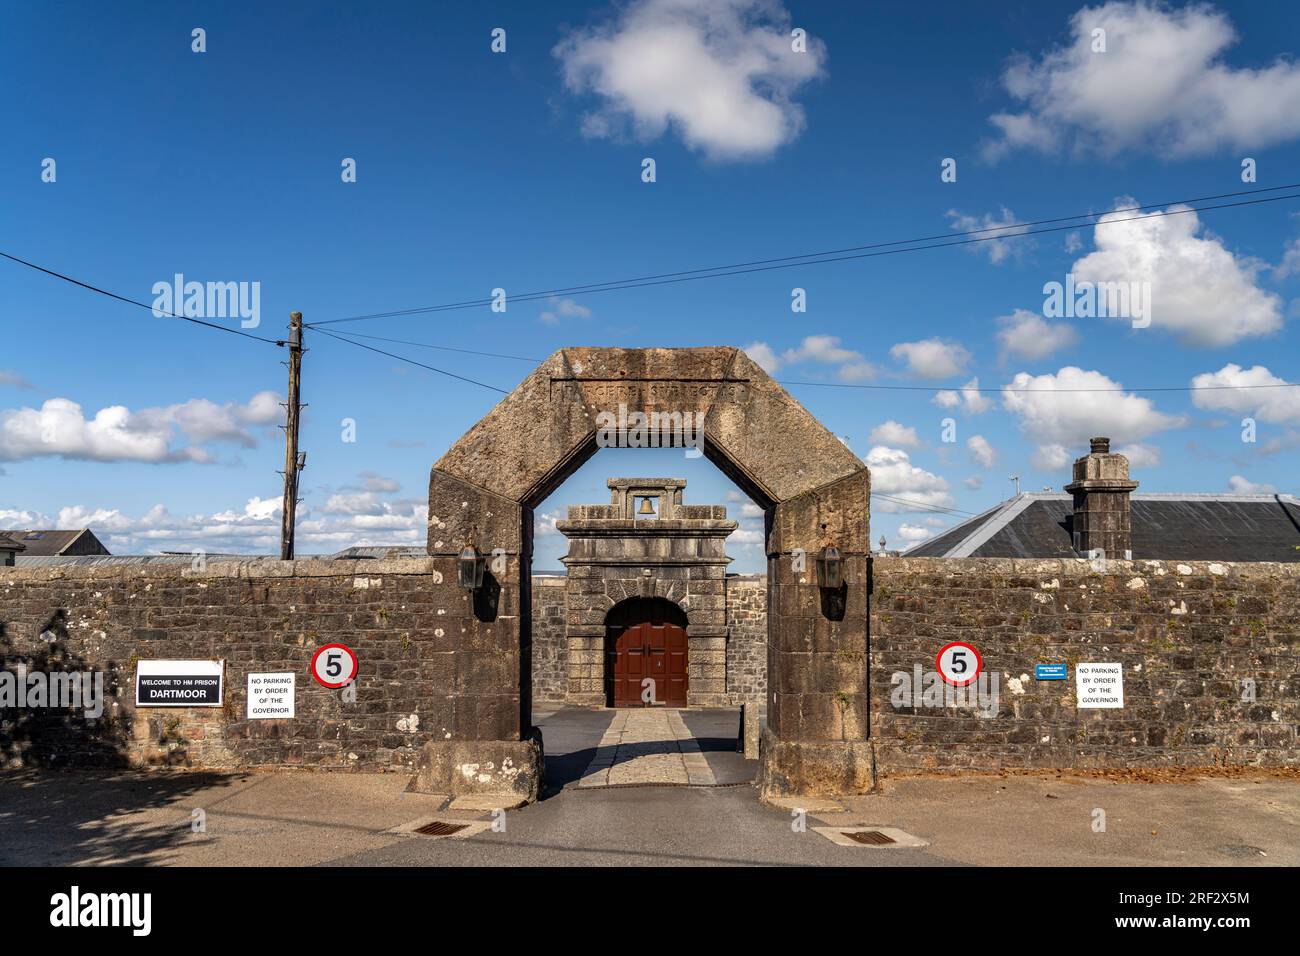 DAS Gefängnis His Majesty’s Prison Dartmoor bei Princetown, Dartmoor, Devon, England, Großbritannien, Europa | Dartmoor prigione di sua Maestà a Prin Foto Stock